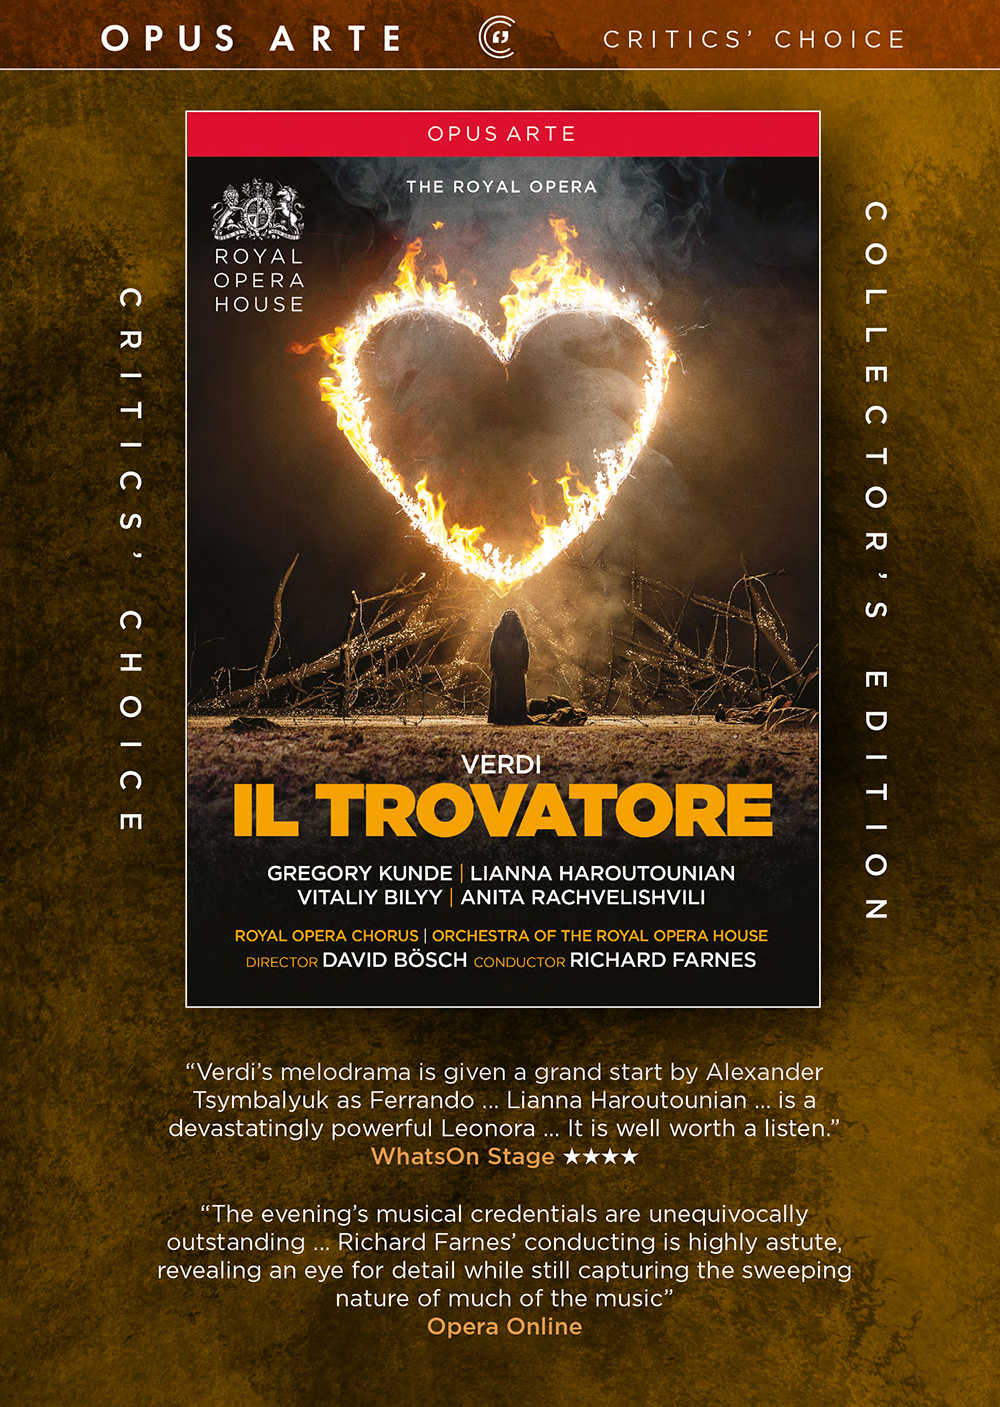 VERDI, G.: Trovatore (Il) [Opera] (Royal Opera House, 2017) (NTSC)